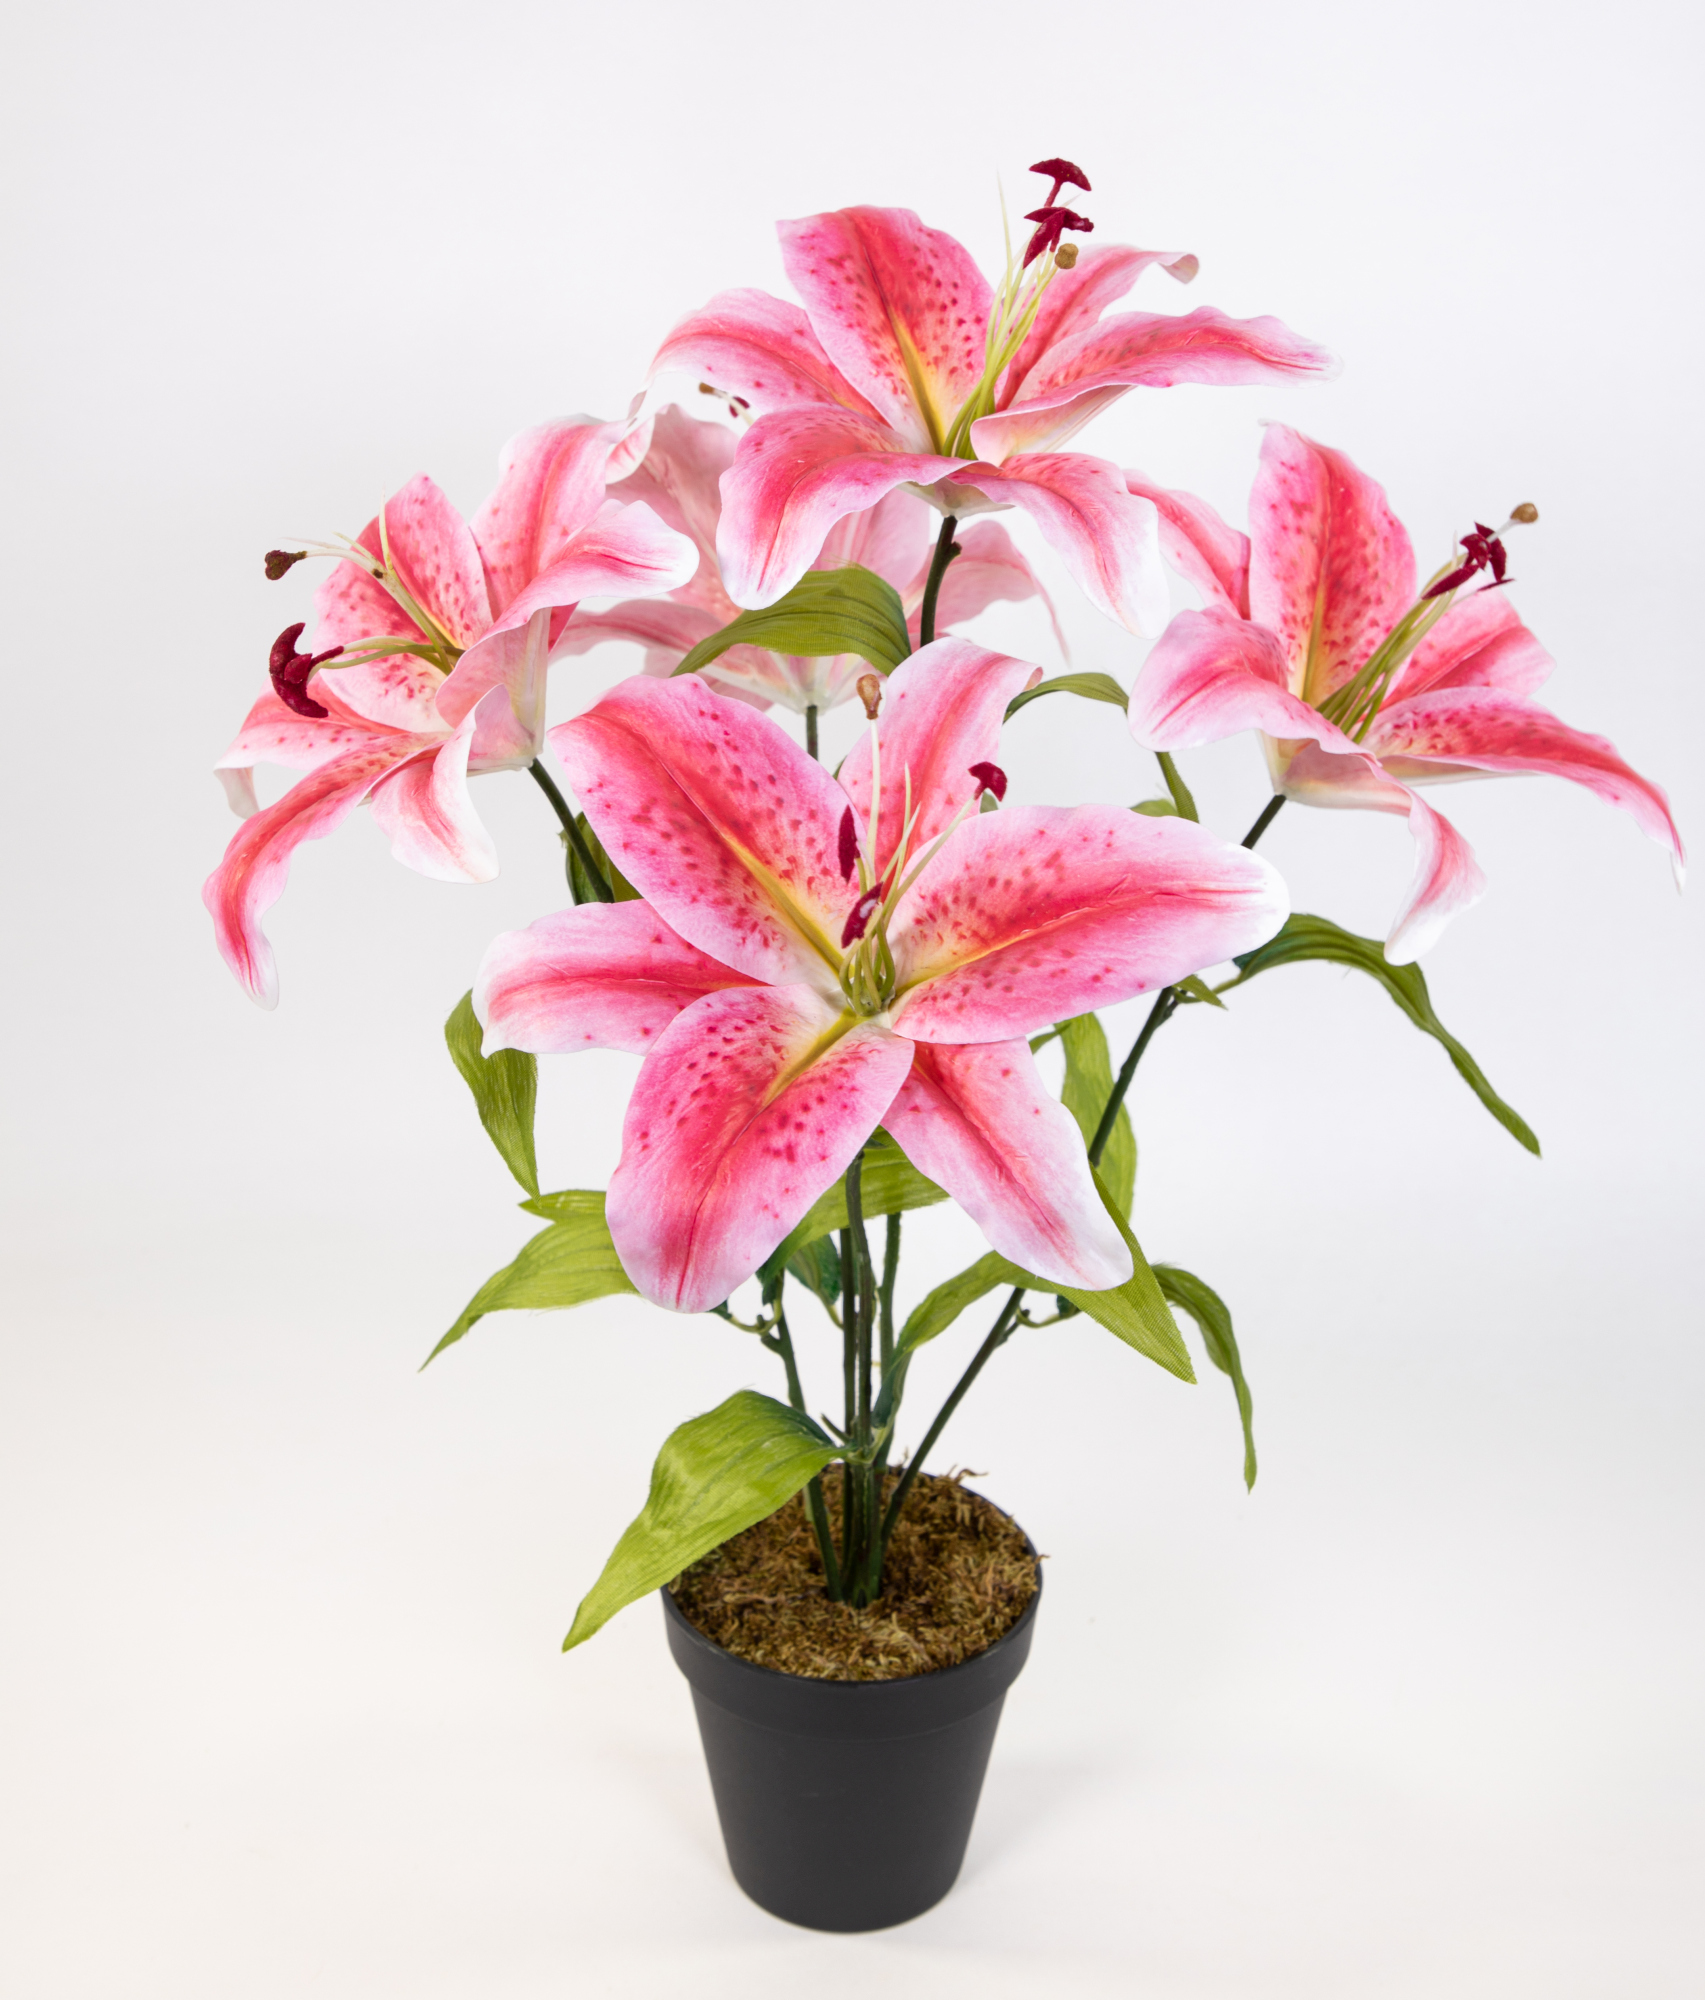 Lilie Real Touch 50cm rosa-pink im Topf DP Kunstblumen Kunstpflanzen künstliche Blumen Pflanze